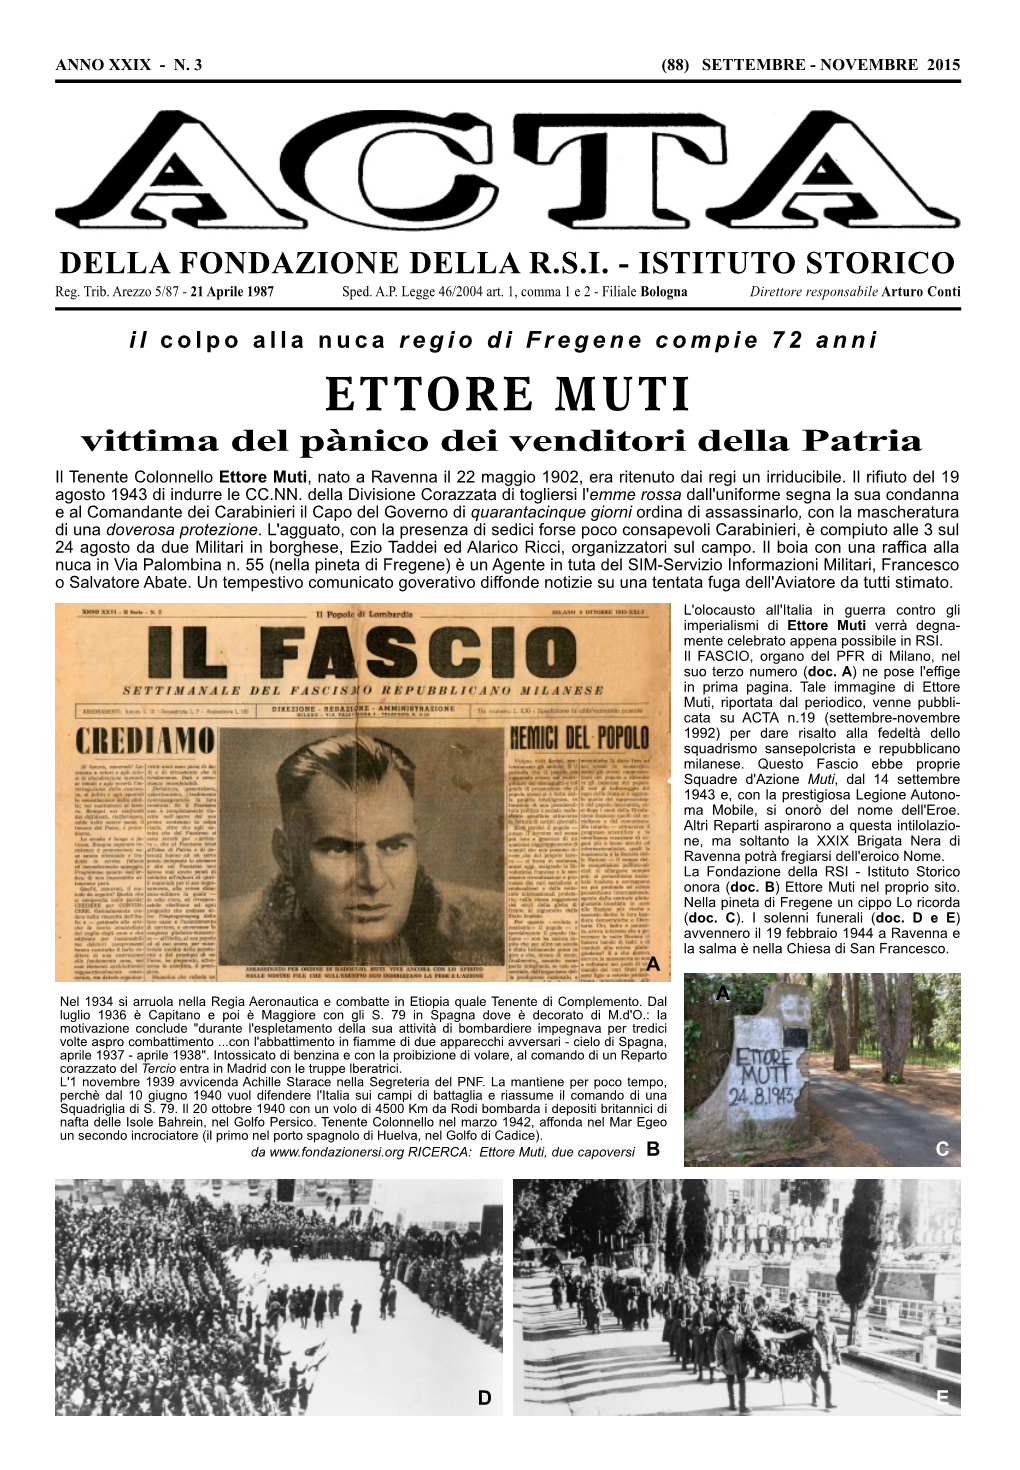 Ettore Muti, Nato a Ravenna Il 22 Maggio 1902, Era Ritenuto Dai Regi Un Irriducibile